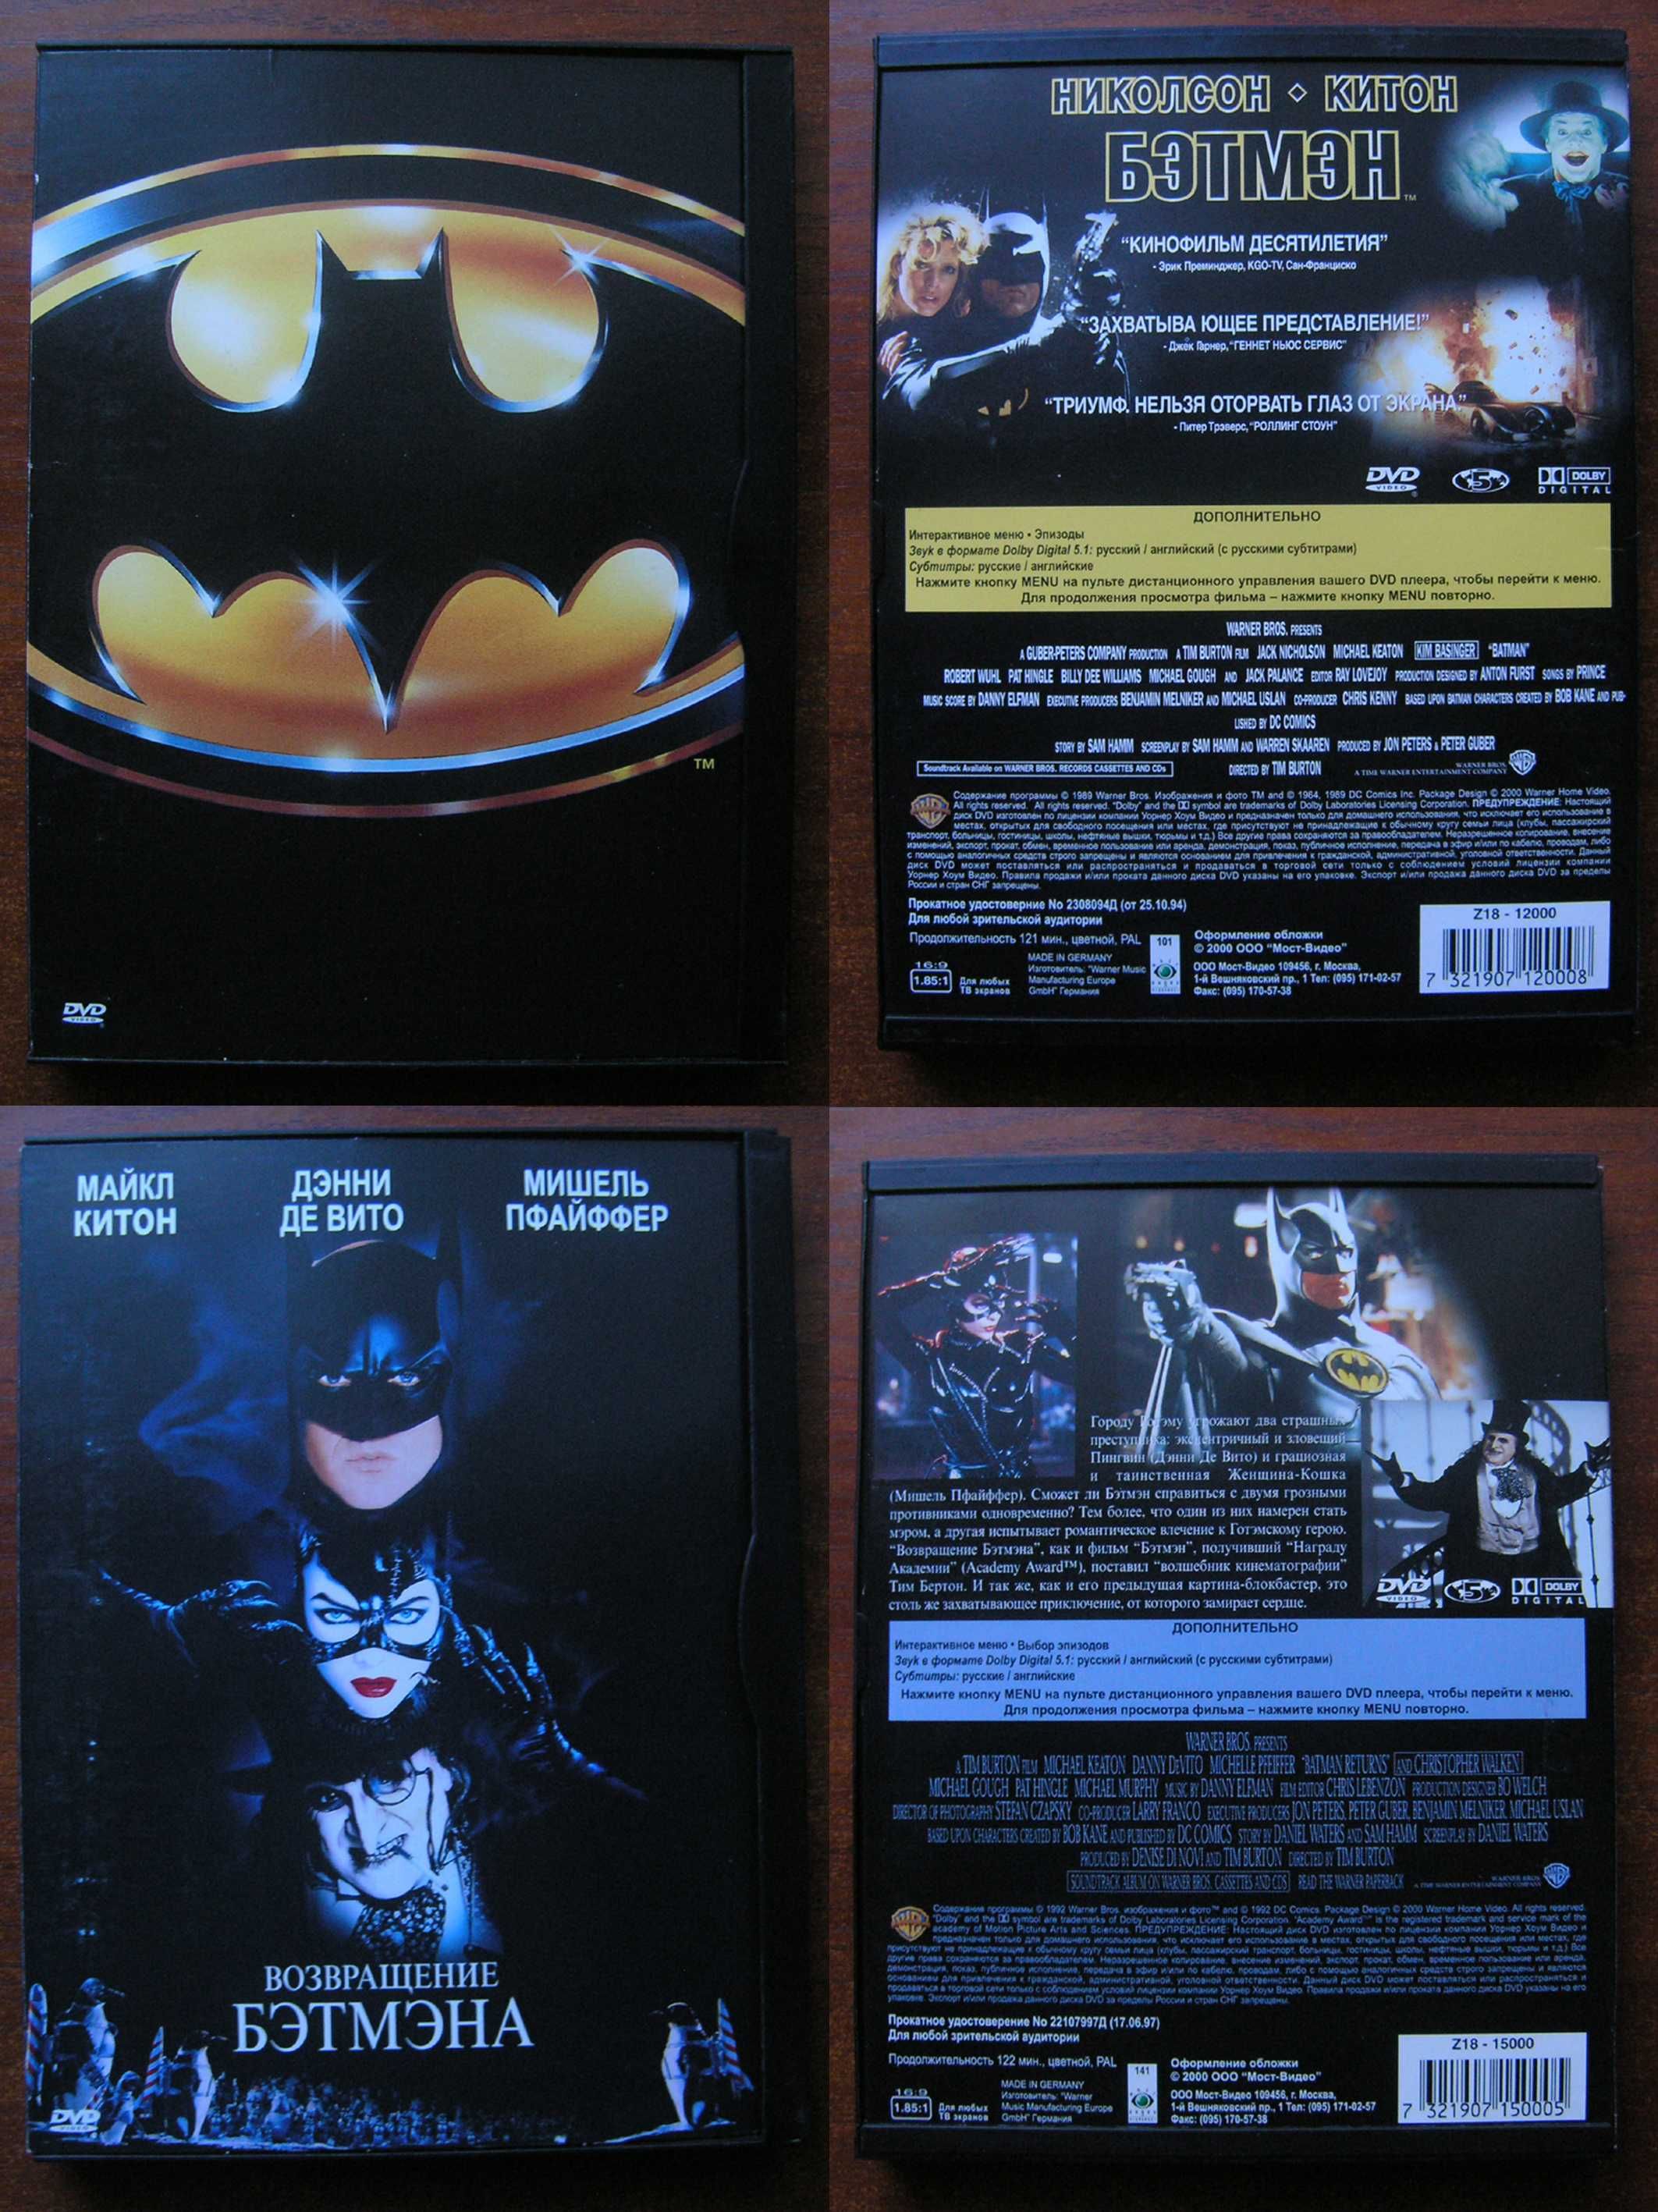 Продам оригинальные фирменные DVD R5 фильмы (для коллекционеров) №-7